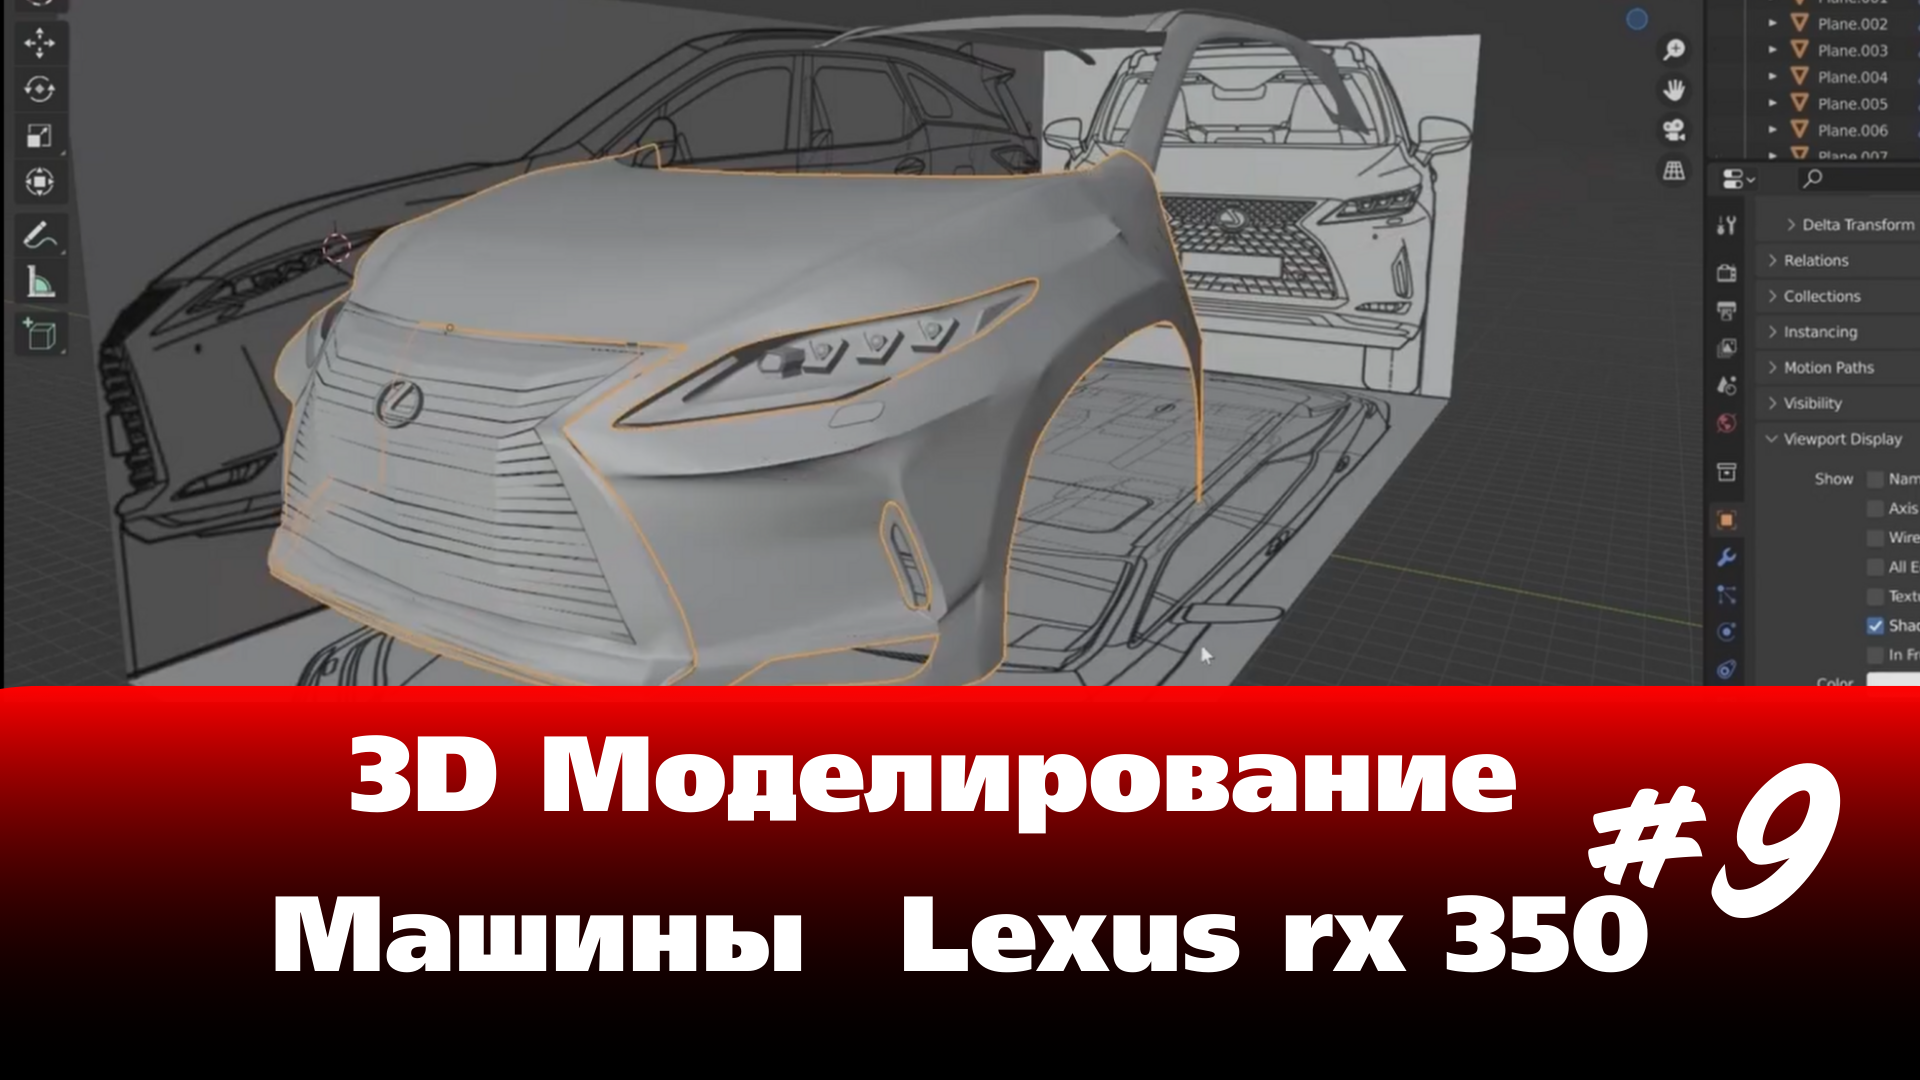 3D Моделирование Машины в Blender - Lexus rx 350 часть 9